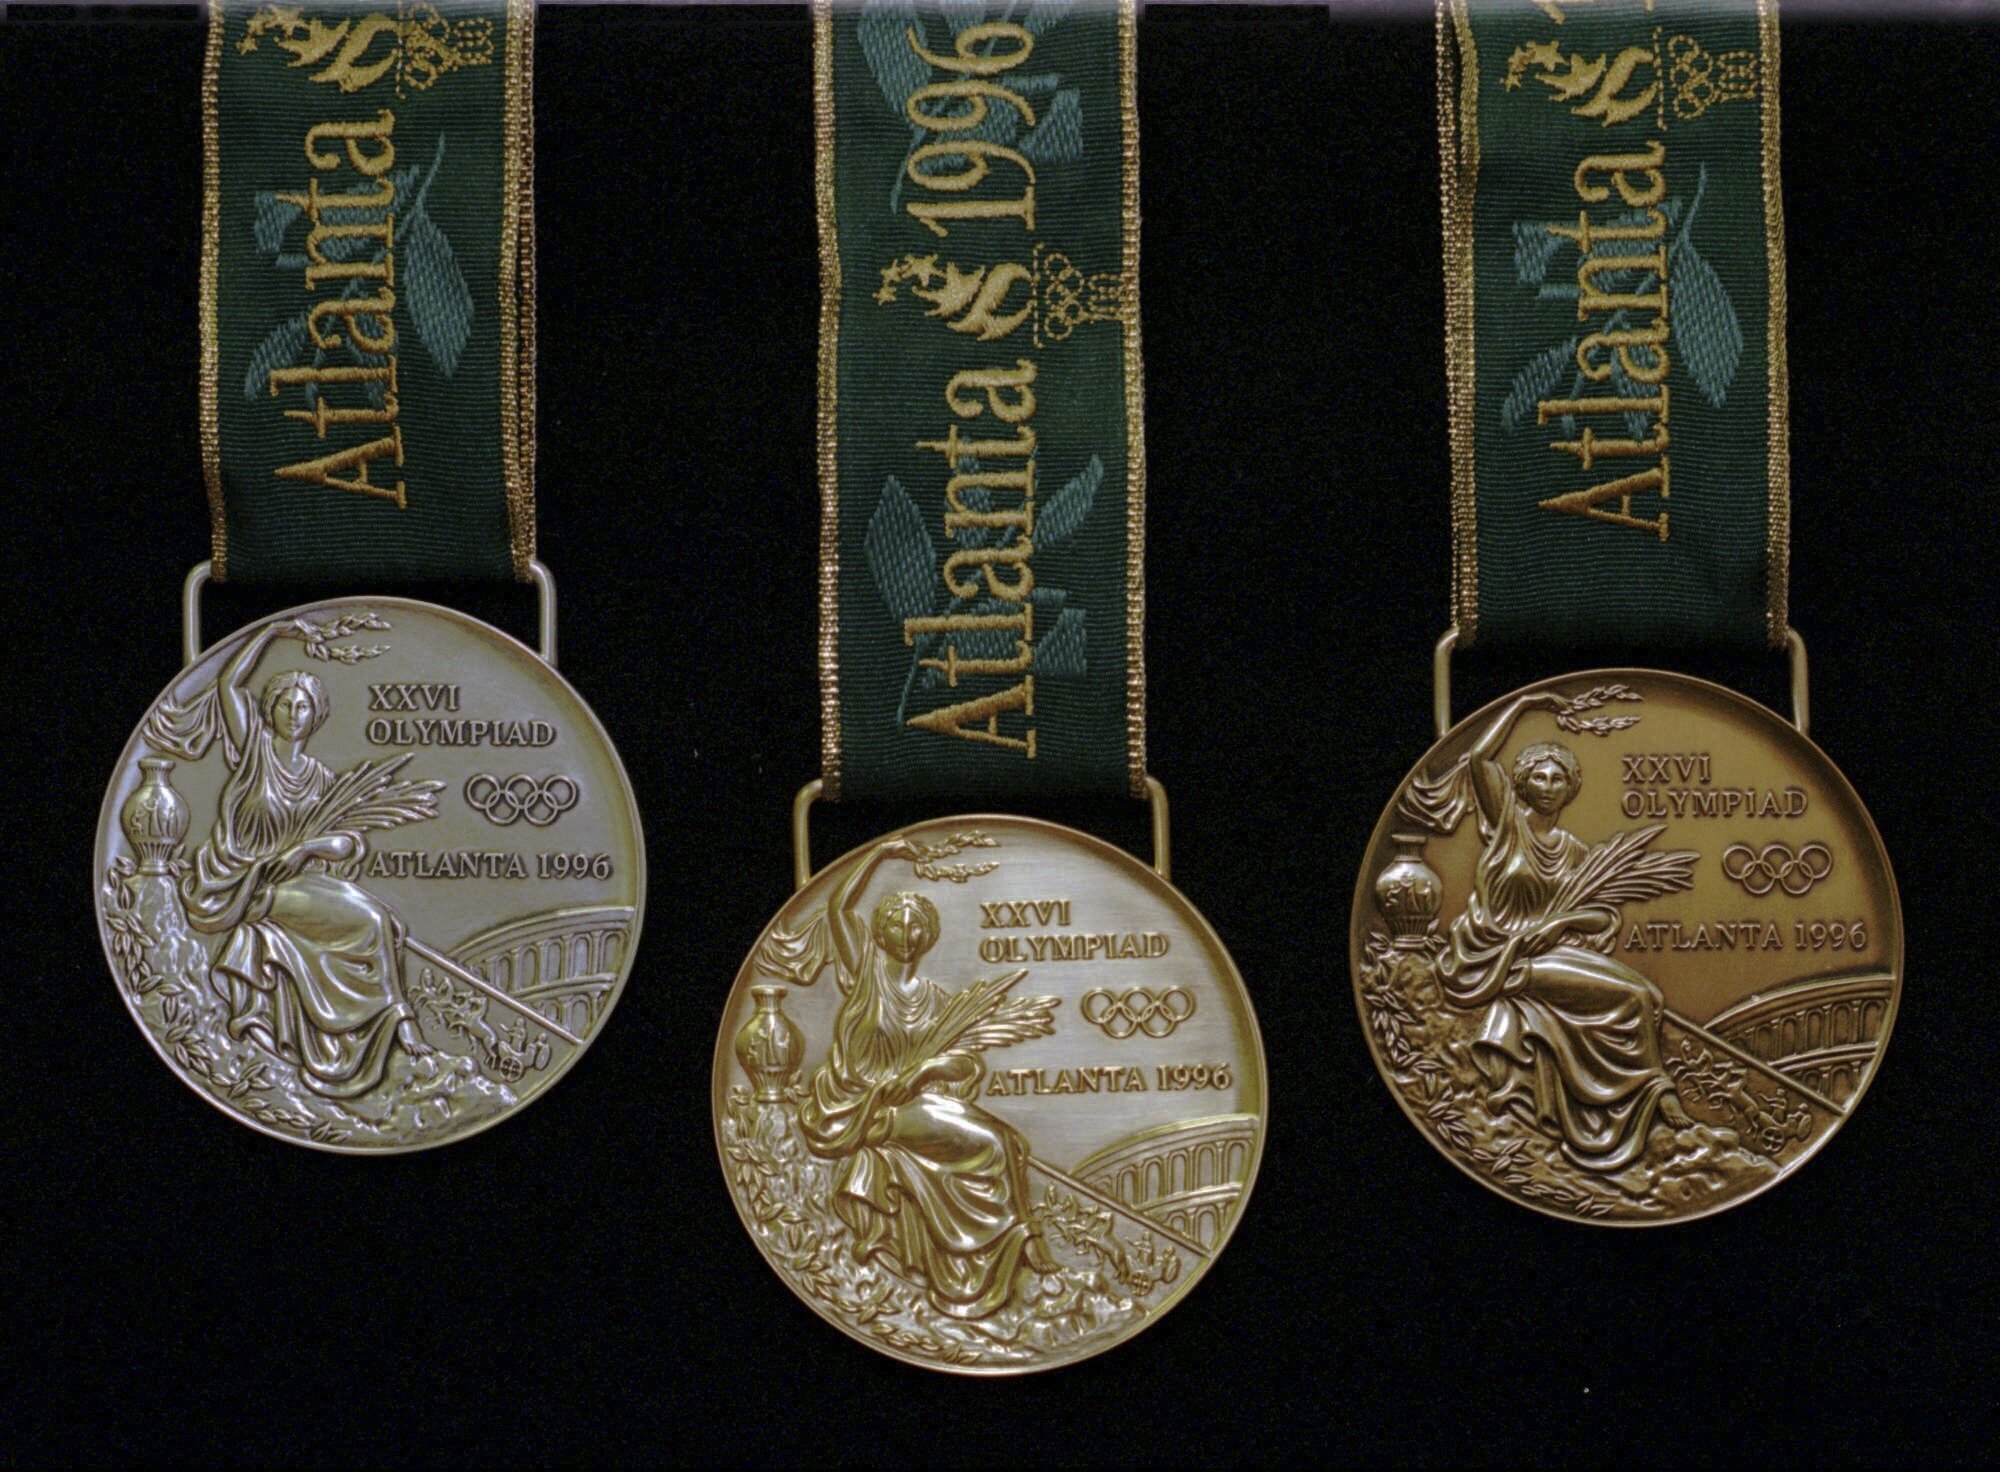 Медали прошлых лет. Олимпийские игры 1996 медали. Олимпийская медаль Атланта 1996. Золотая медаль олимпиады Атланта 1996. Медали Олимпийских игр 1996 Атланта.